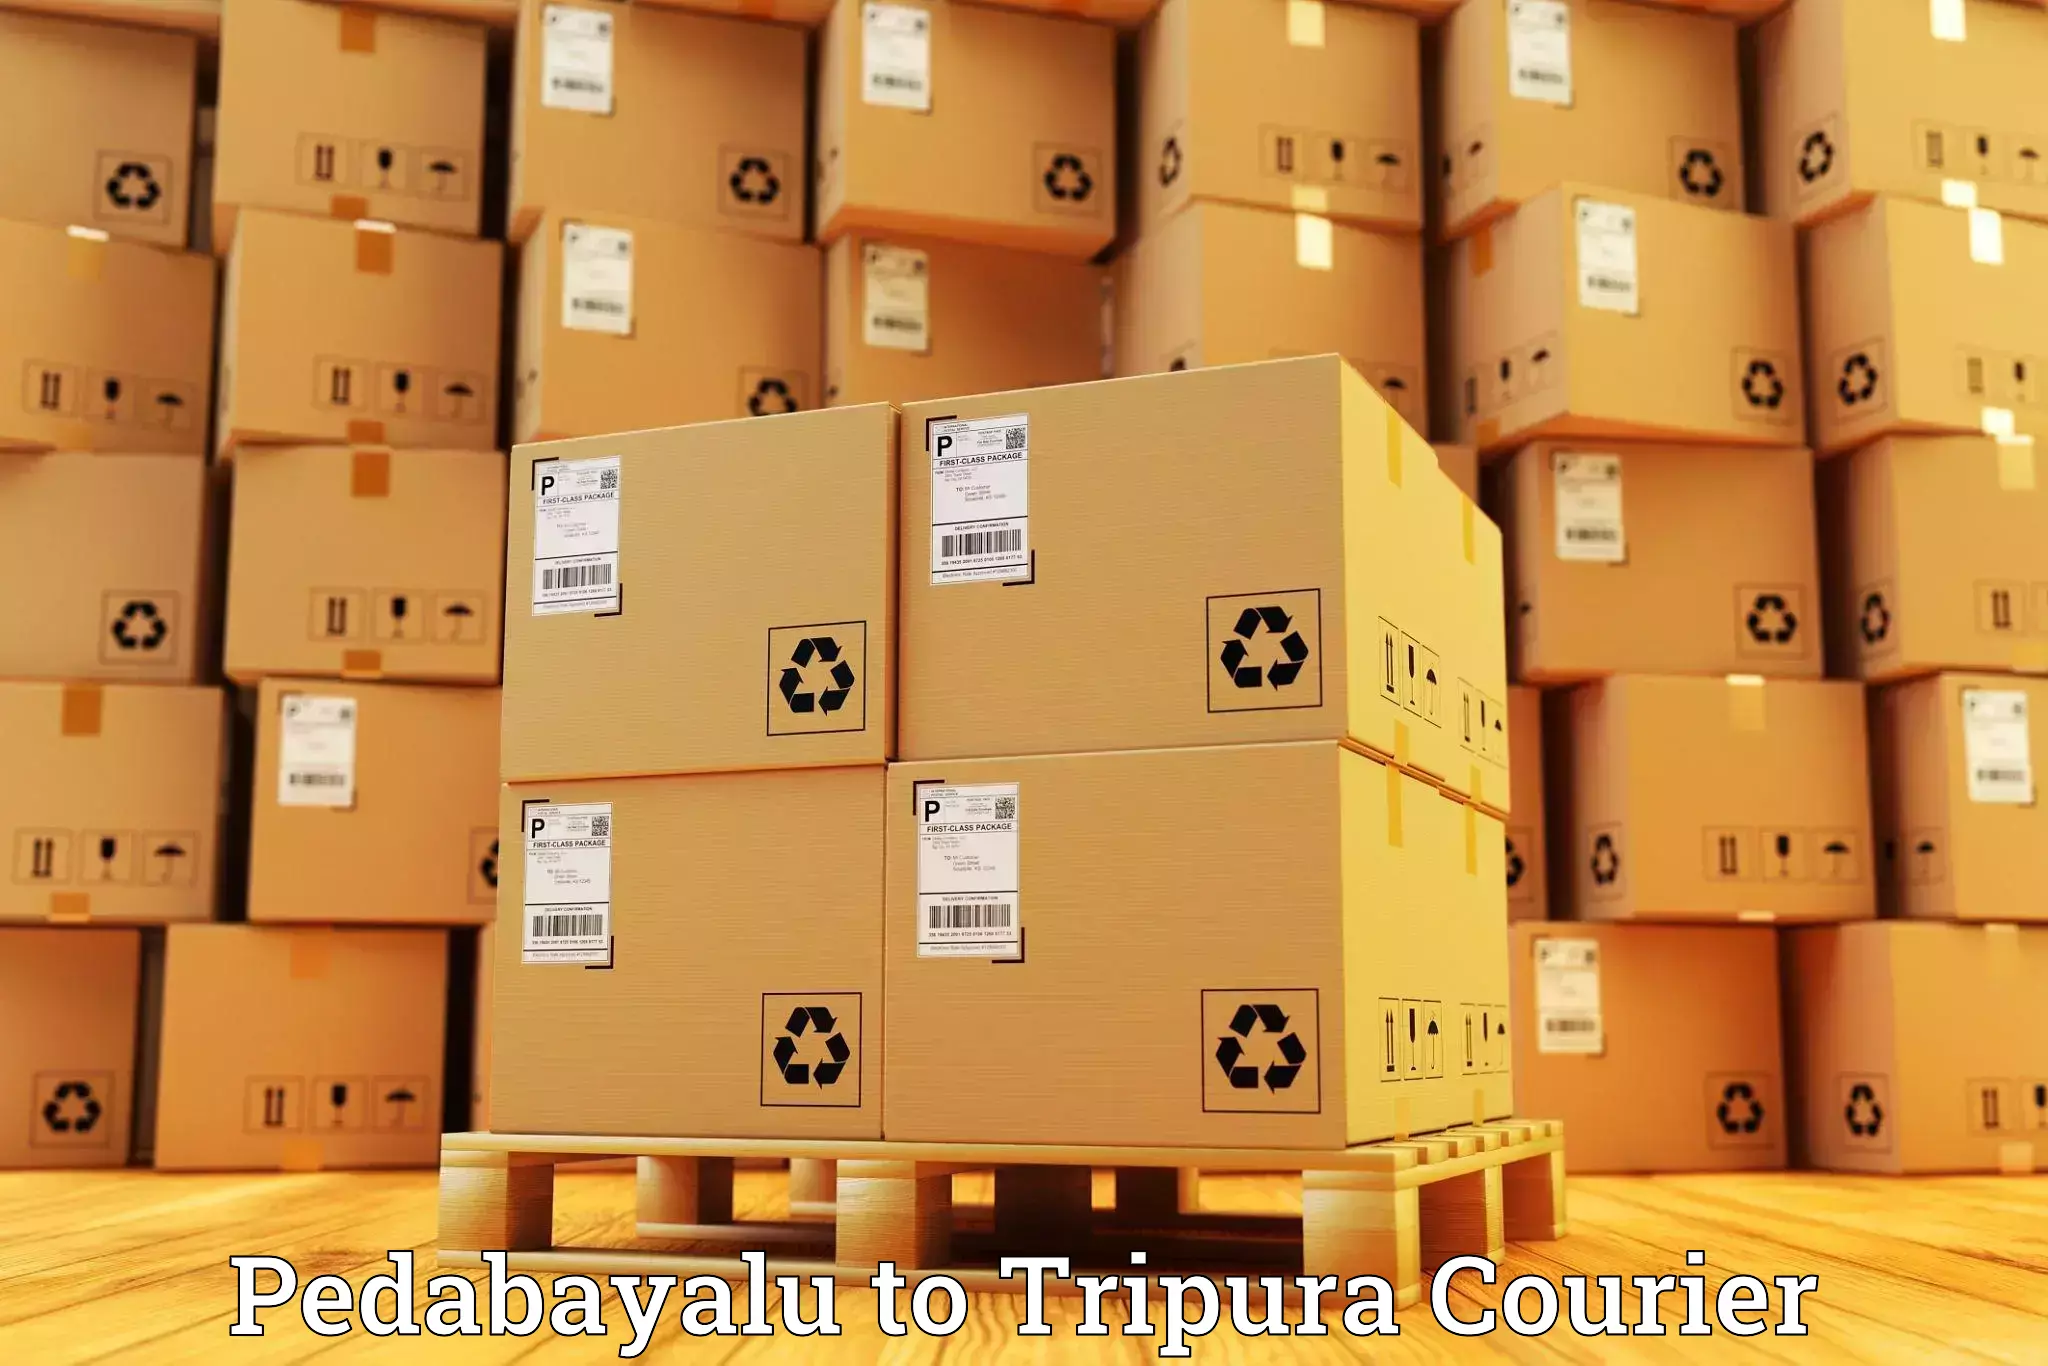 Parcel delivery automation Pedabayalu to Manu Bazar